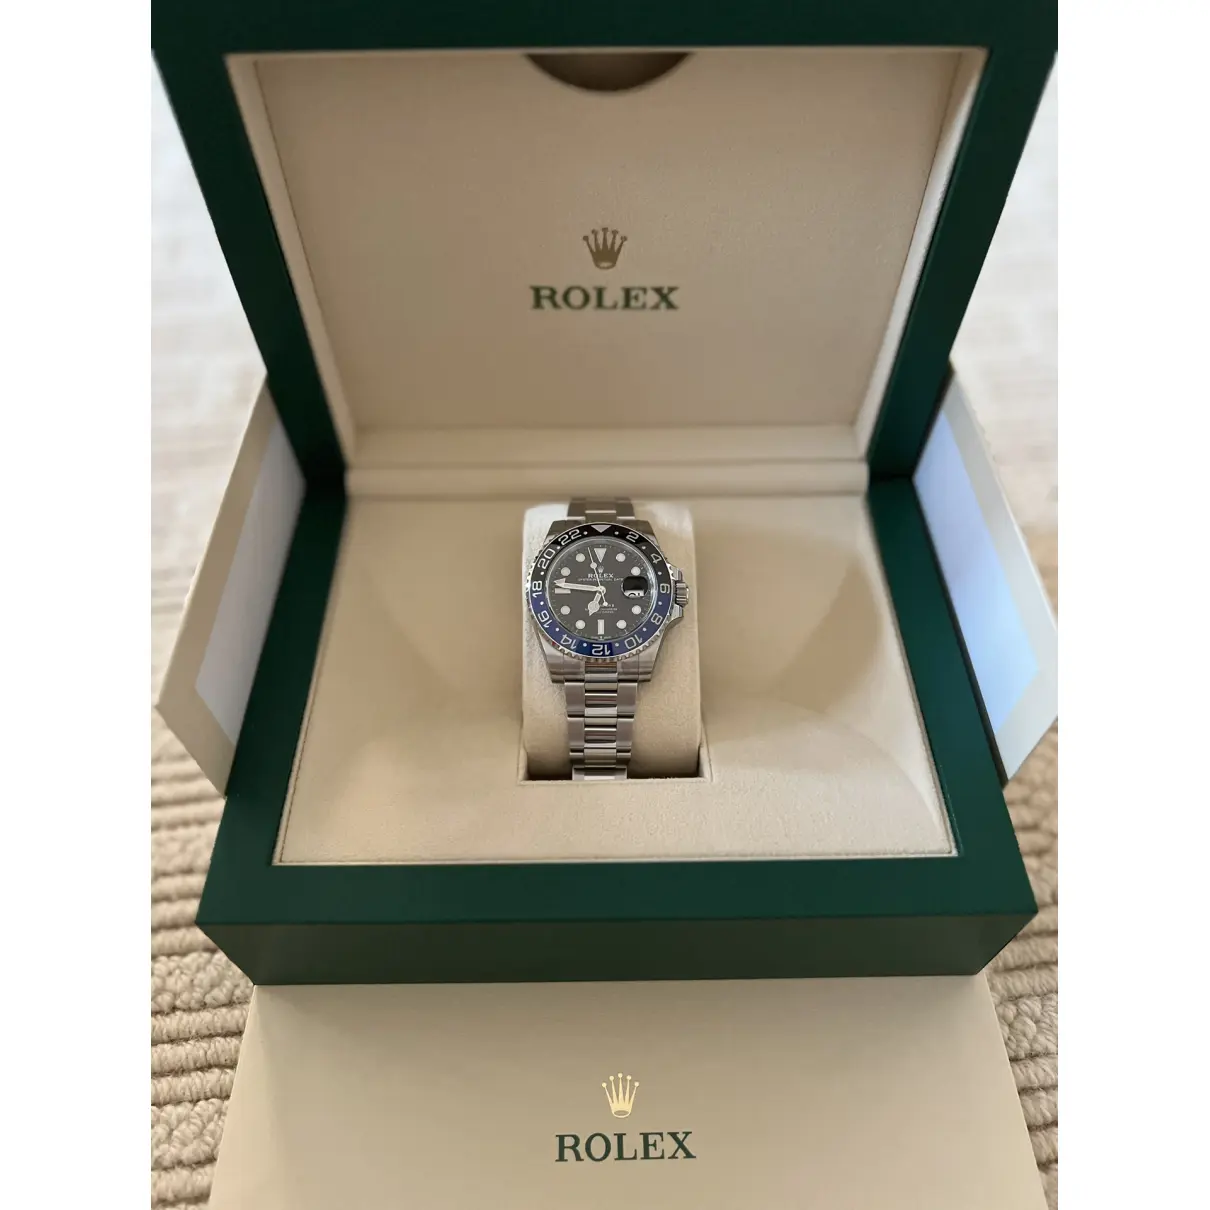 Buy Rolex GMT-Master II ceramic watch online